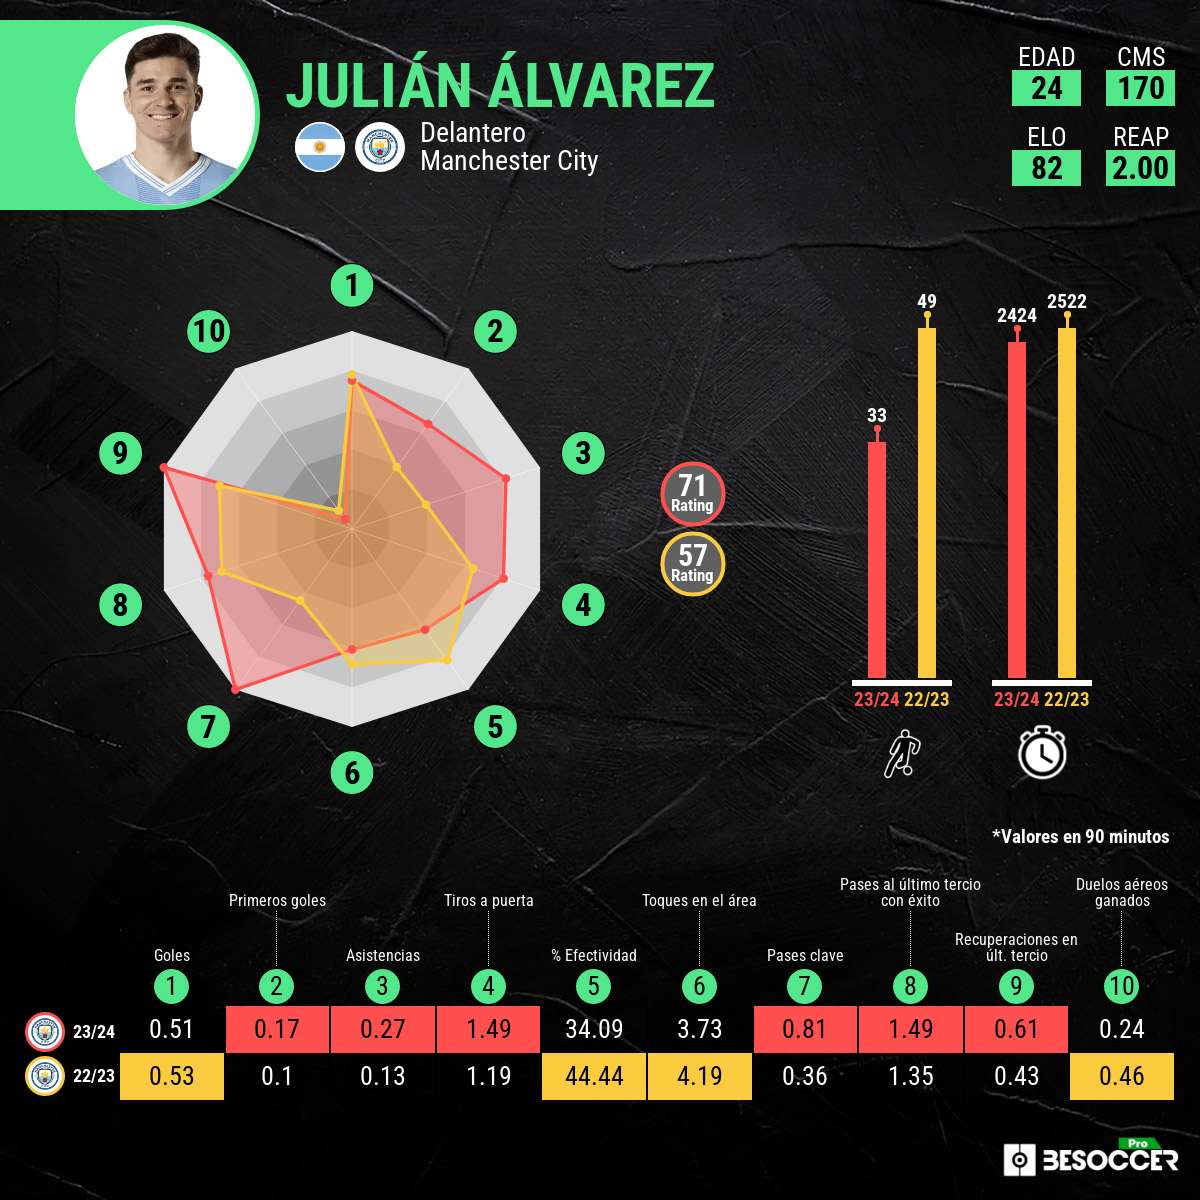 Guardiola potencia la visión de Julián: duplica sus números en asistencias y pases clave